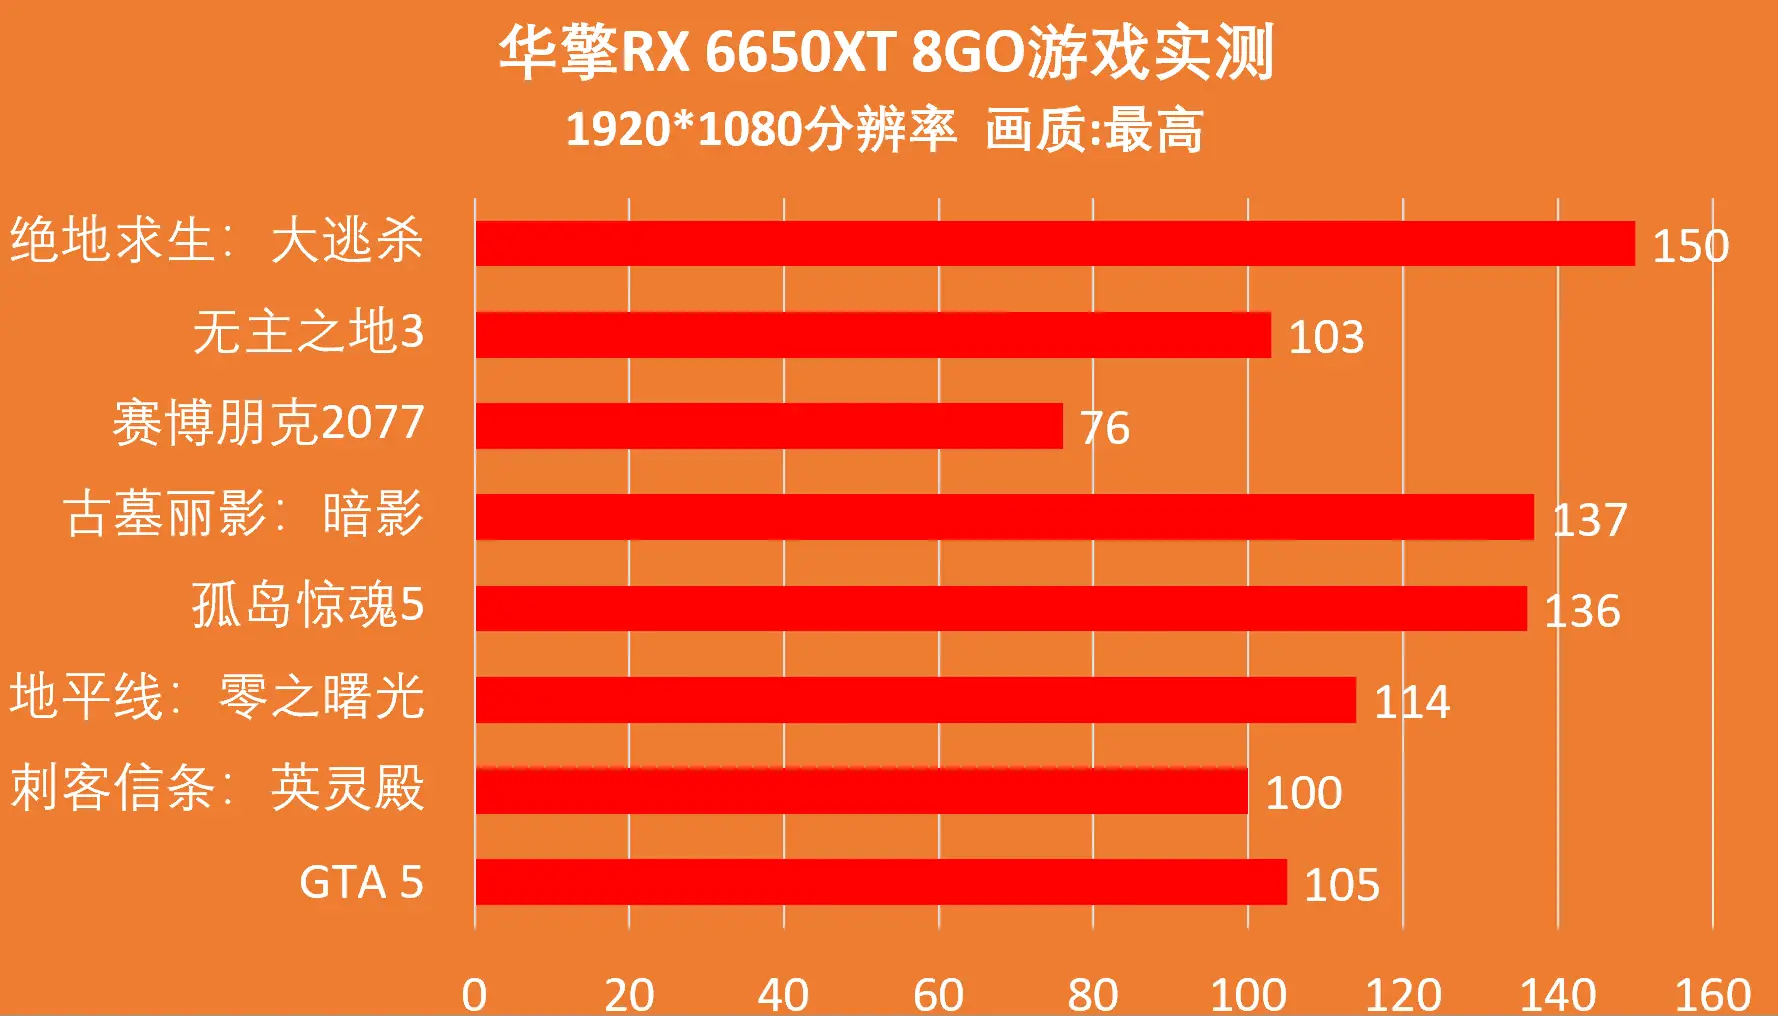 DDR、DDR2、DDR3、DDR4 和 DDR5 内存如何选择？频率越高越好吗？  第5张